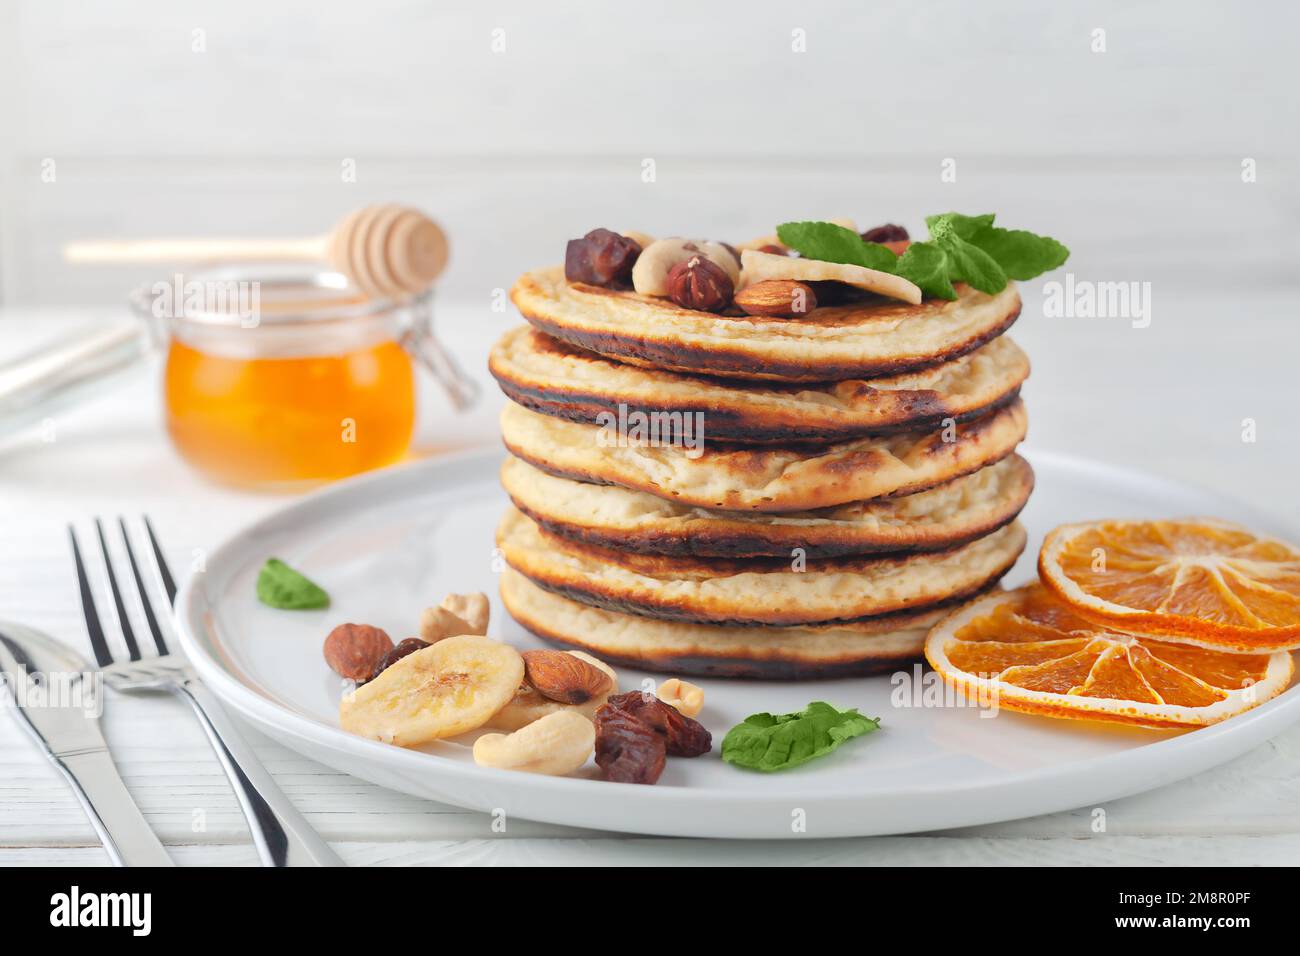 Frische hausgemachte Pfannkuchen mit getrockneten Bananen, Orangen, Nüssen und Honig auf einem Teller. Stockfoto